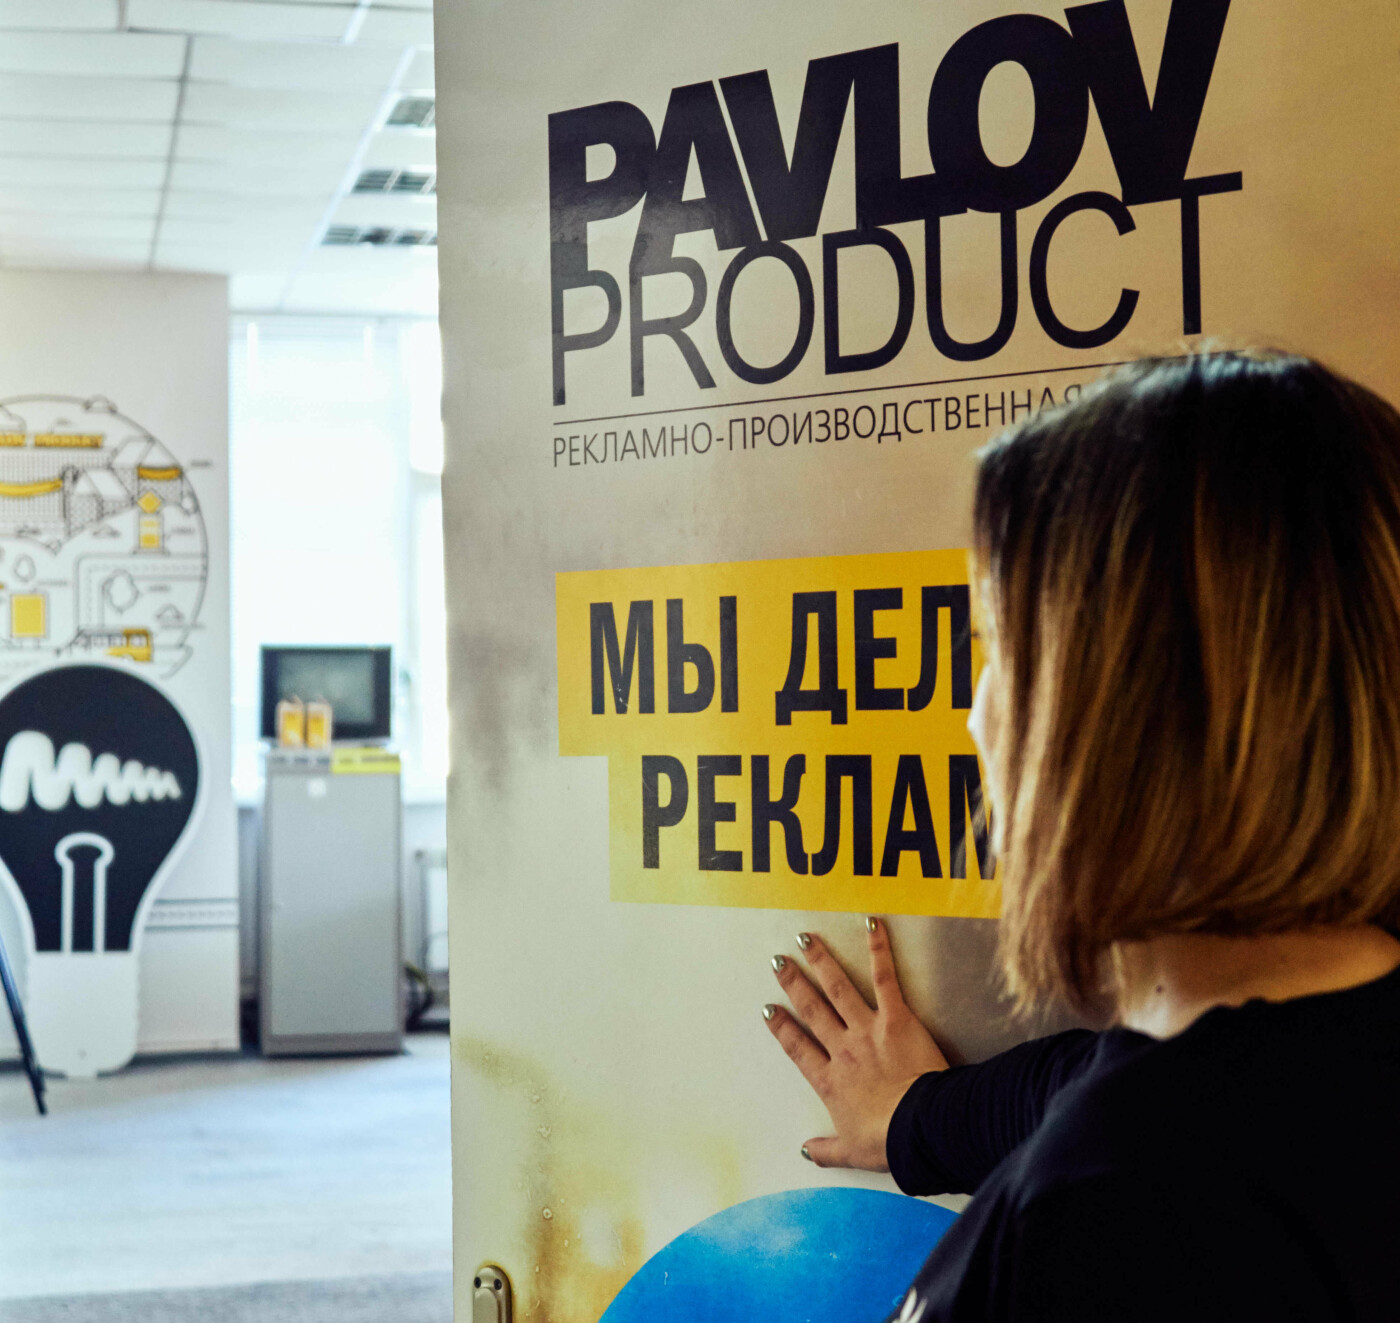 Компания Pavlov.ua вошла в ТОП 100 лучших digital-агентств Украины, фото-3